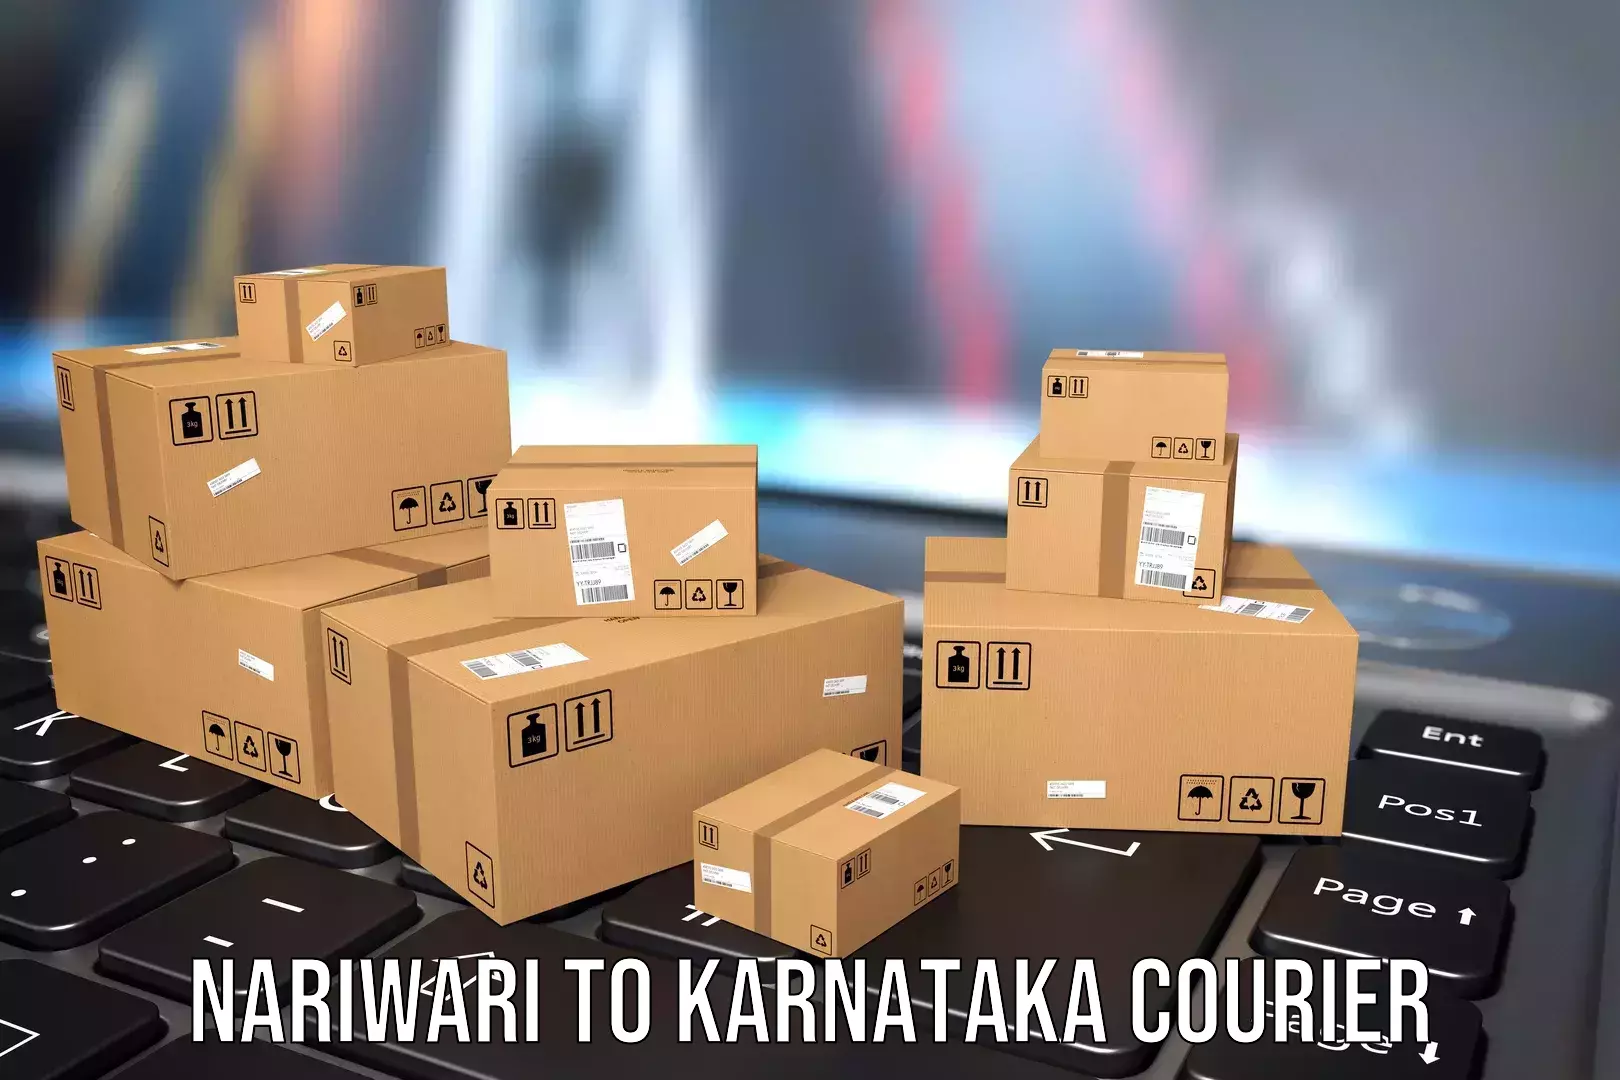 Luggage shipment tracking Nariwari to Karnataka